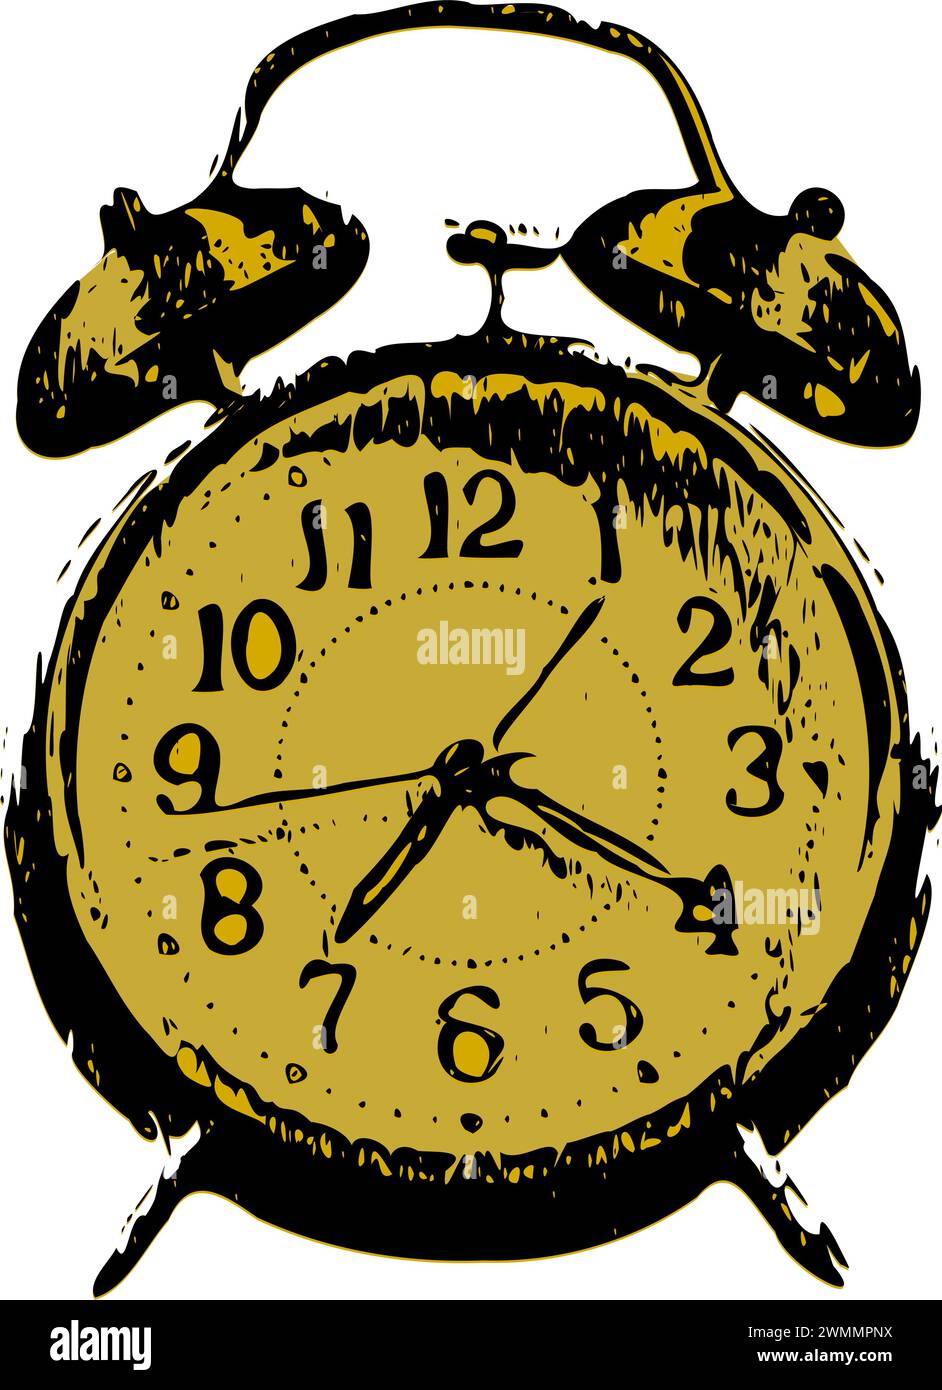 Un orologio da comodino d'epoca con due campanelli sulla parte superiore e maniglie tradizionali per la regolazione dell'ora. Illustrazione Vettoriale